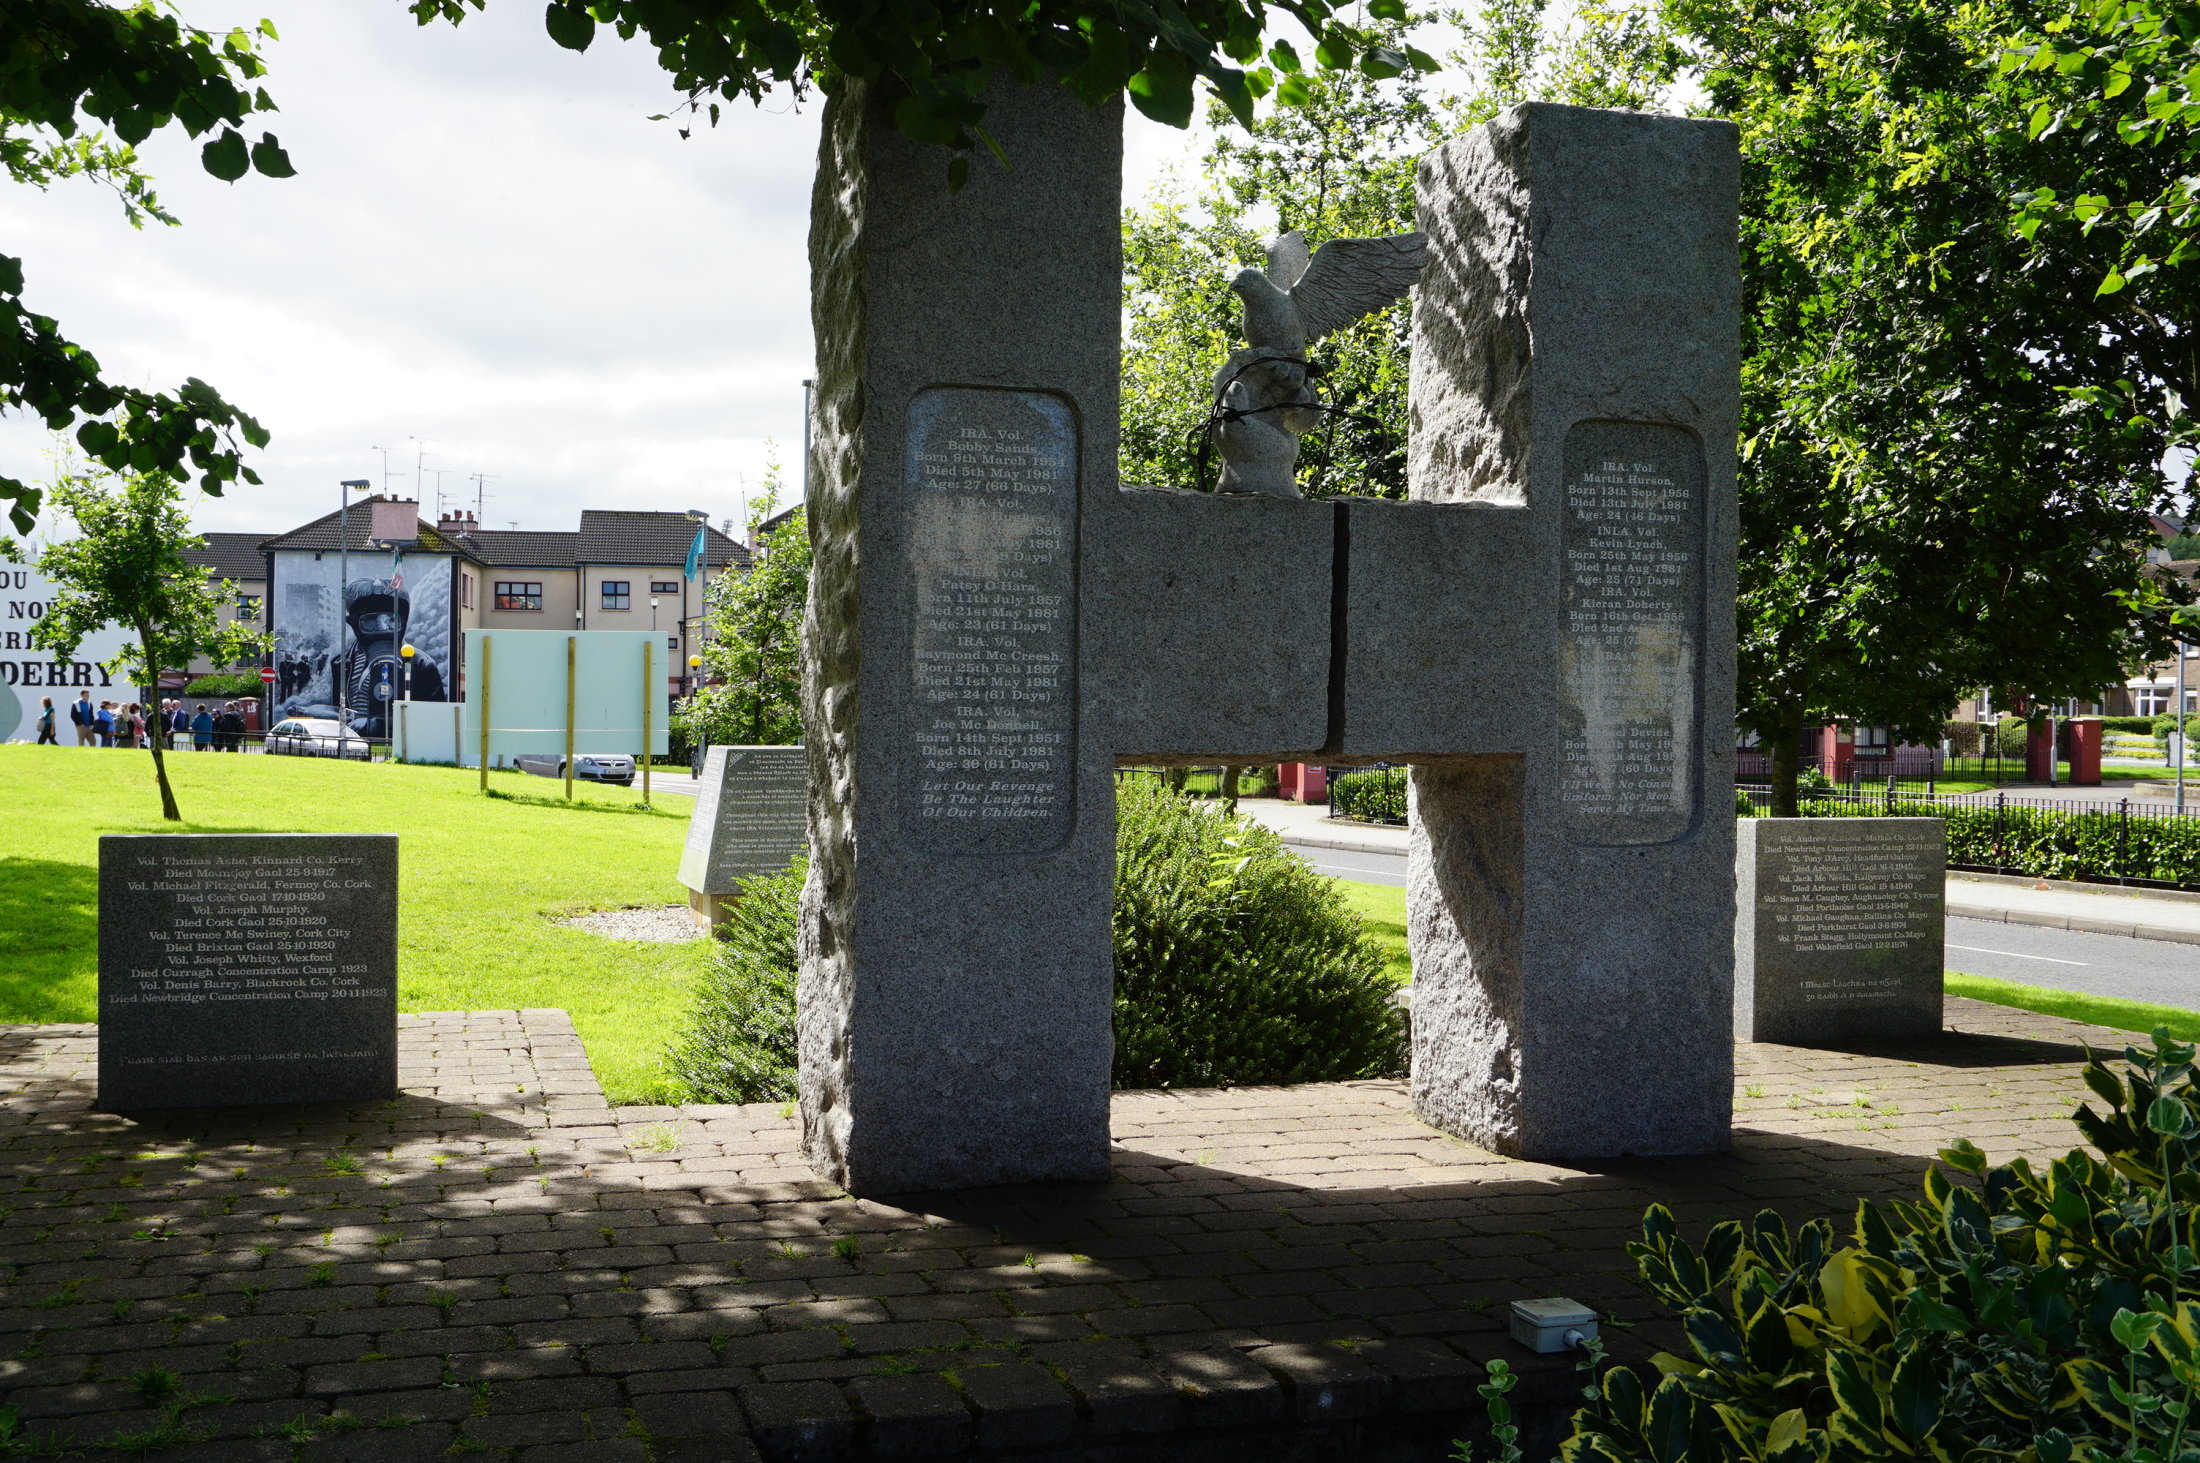 Pamätník hladovkového štrajku republikánskych väzňov v štvrti Bogside v severoírskom Londonderry (Derry)